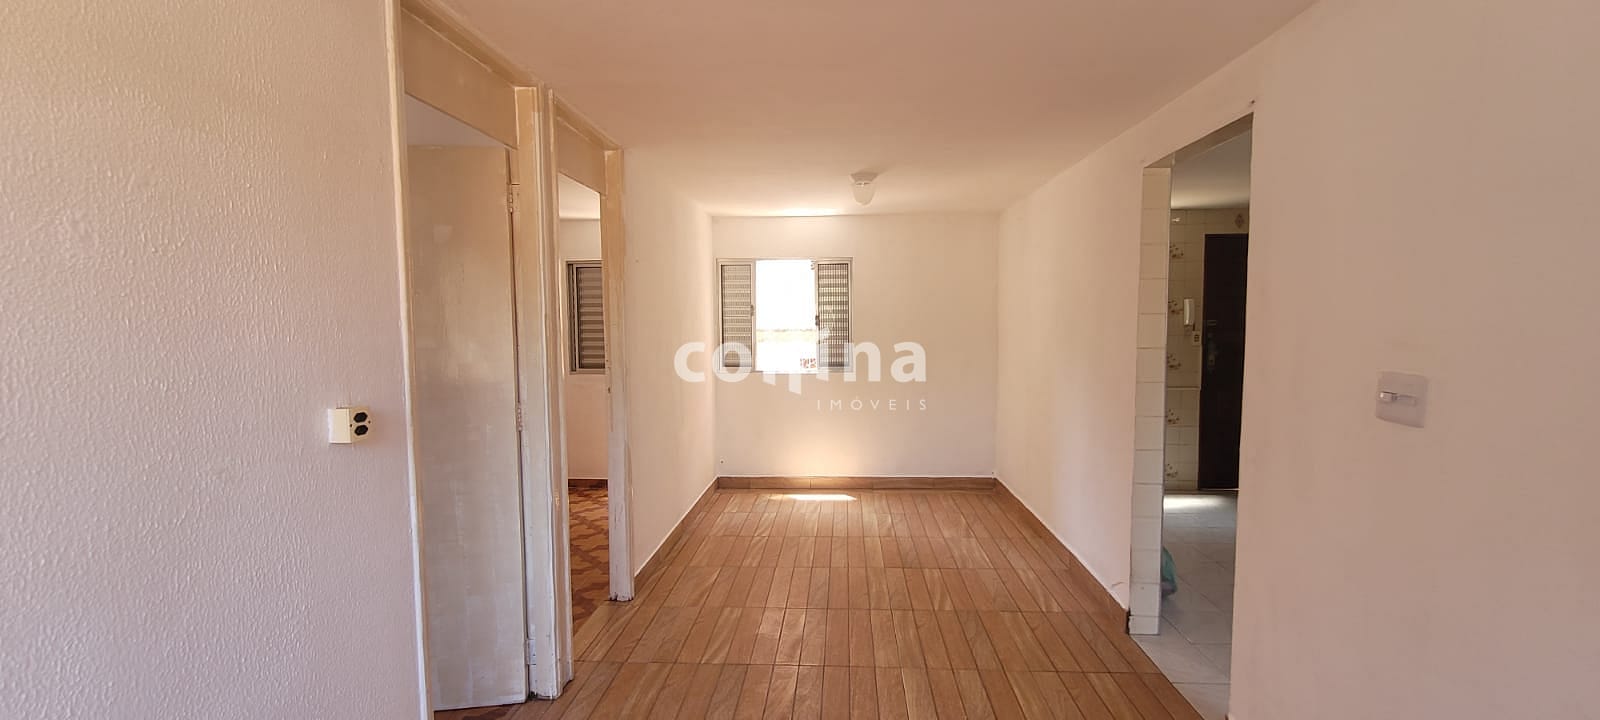 Apartamento em Jardim Ana Maria, Carapicuíba/SP de 52m² 2 quartos à venda por R$ 169.000,00